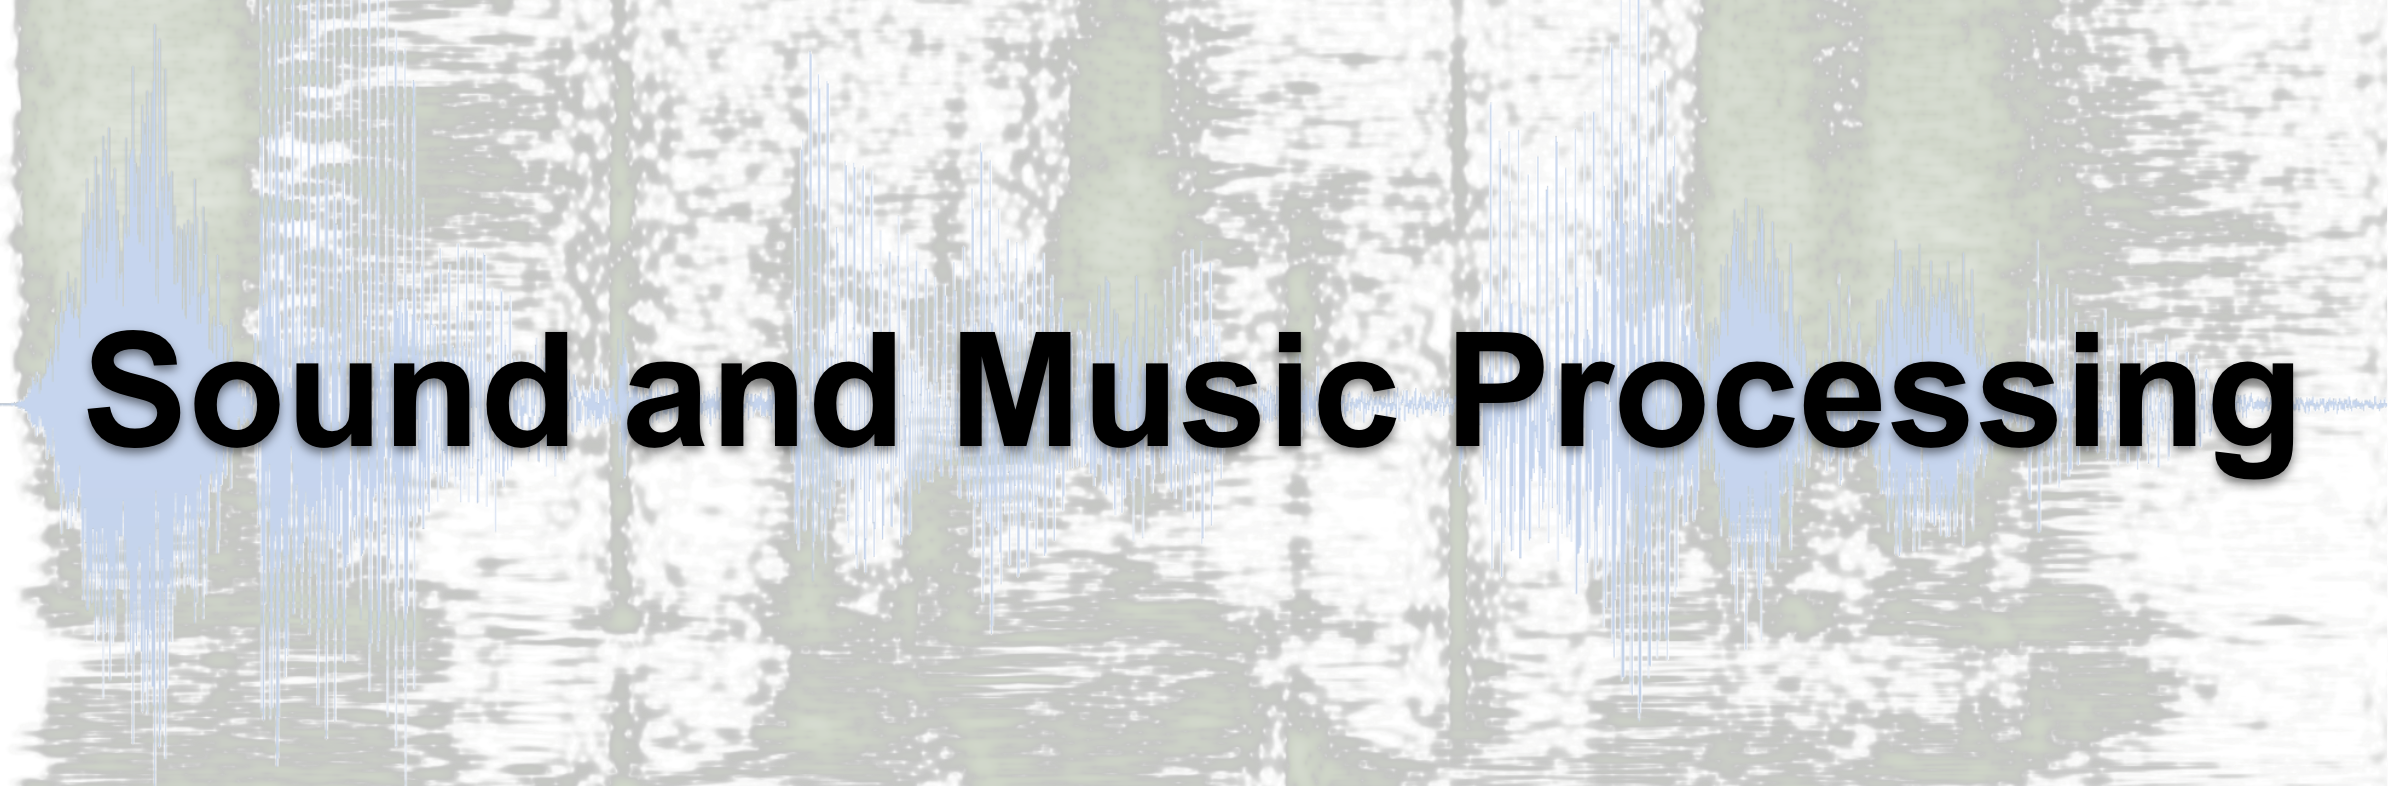 [SoundProc] Sound and Music Processing (TODISCO, Massimiliano)